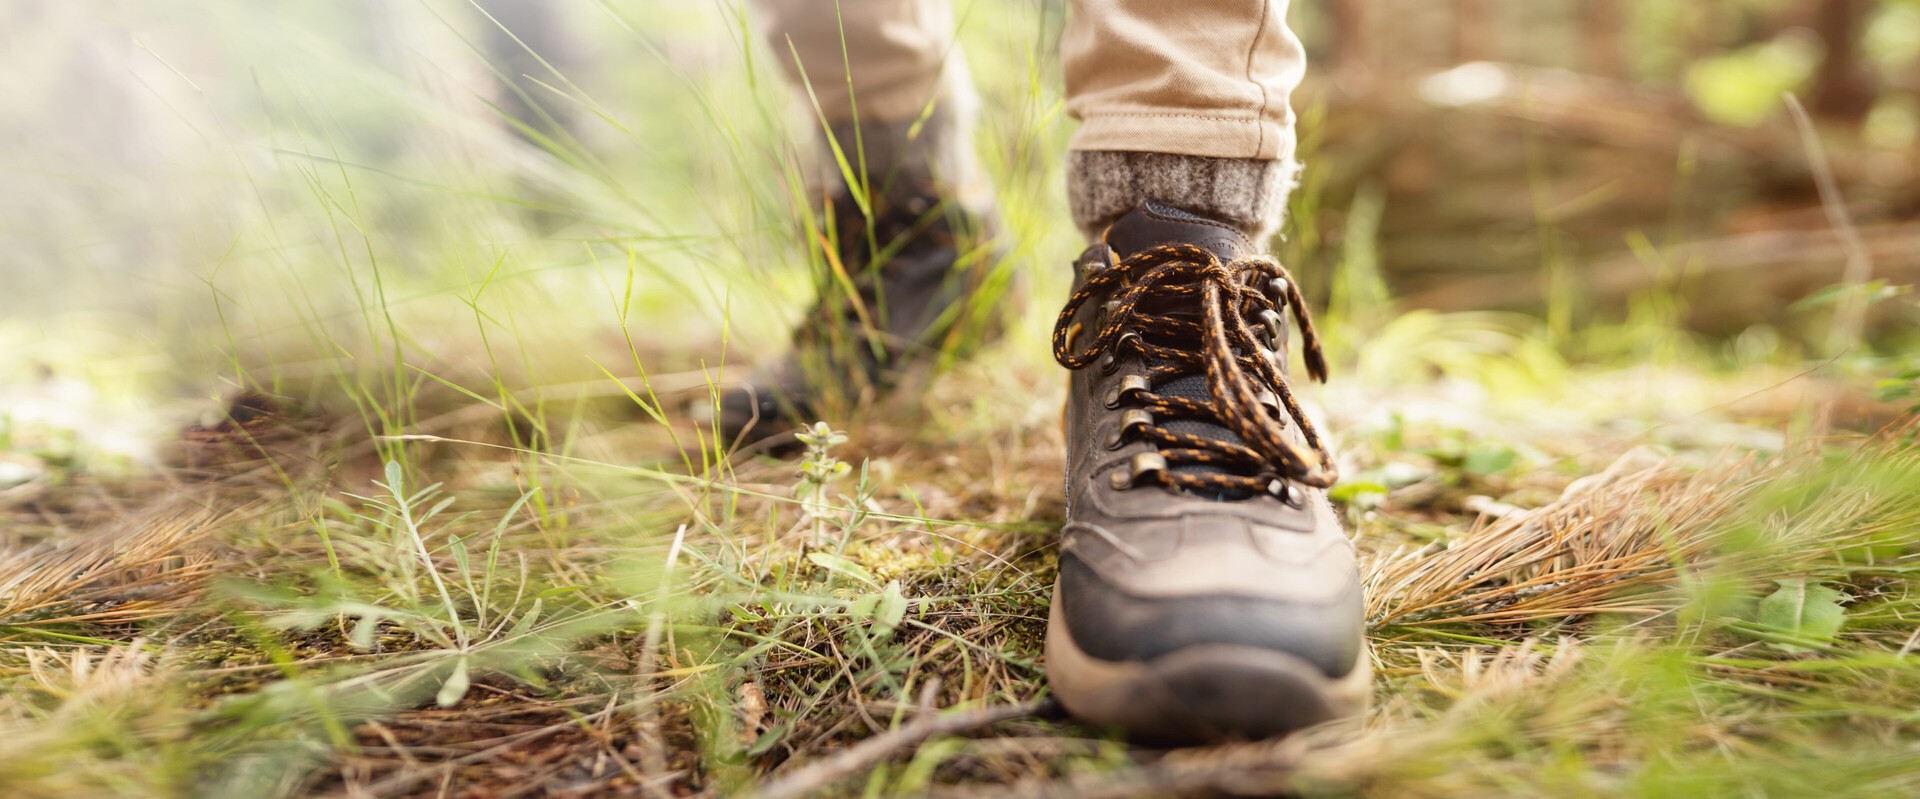 Zwei Füße in Wanderstiefeln auf Waldboden stehen hier für die Thematik trockene Füße.